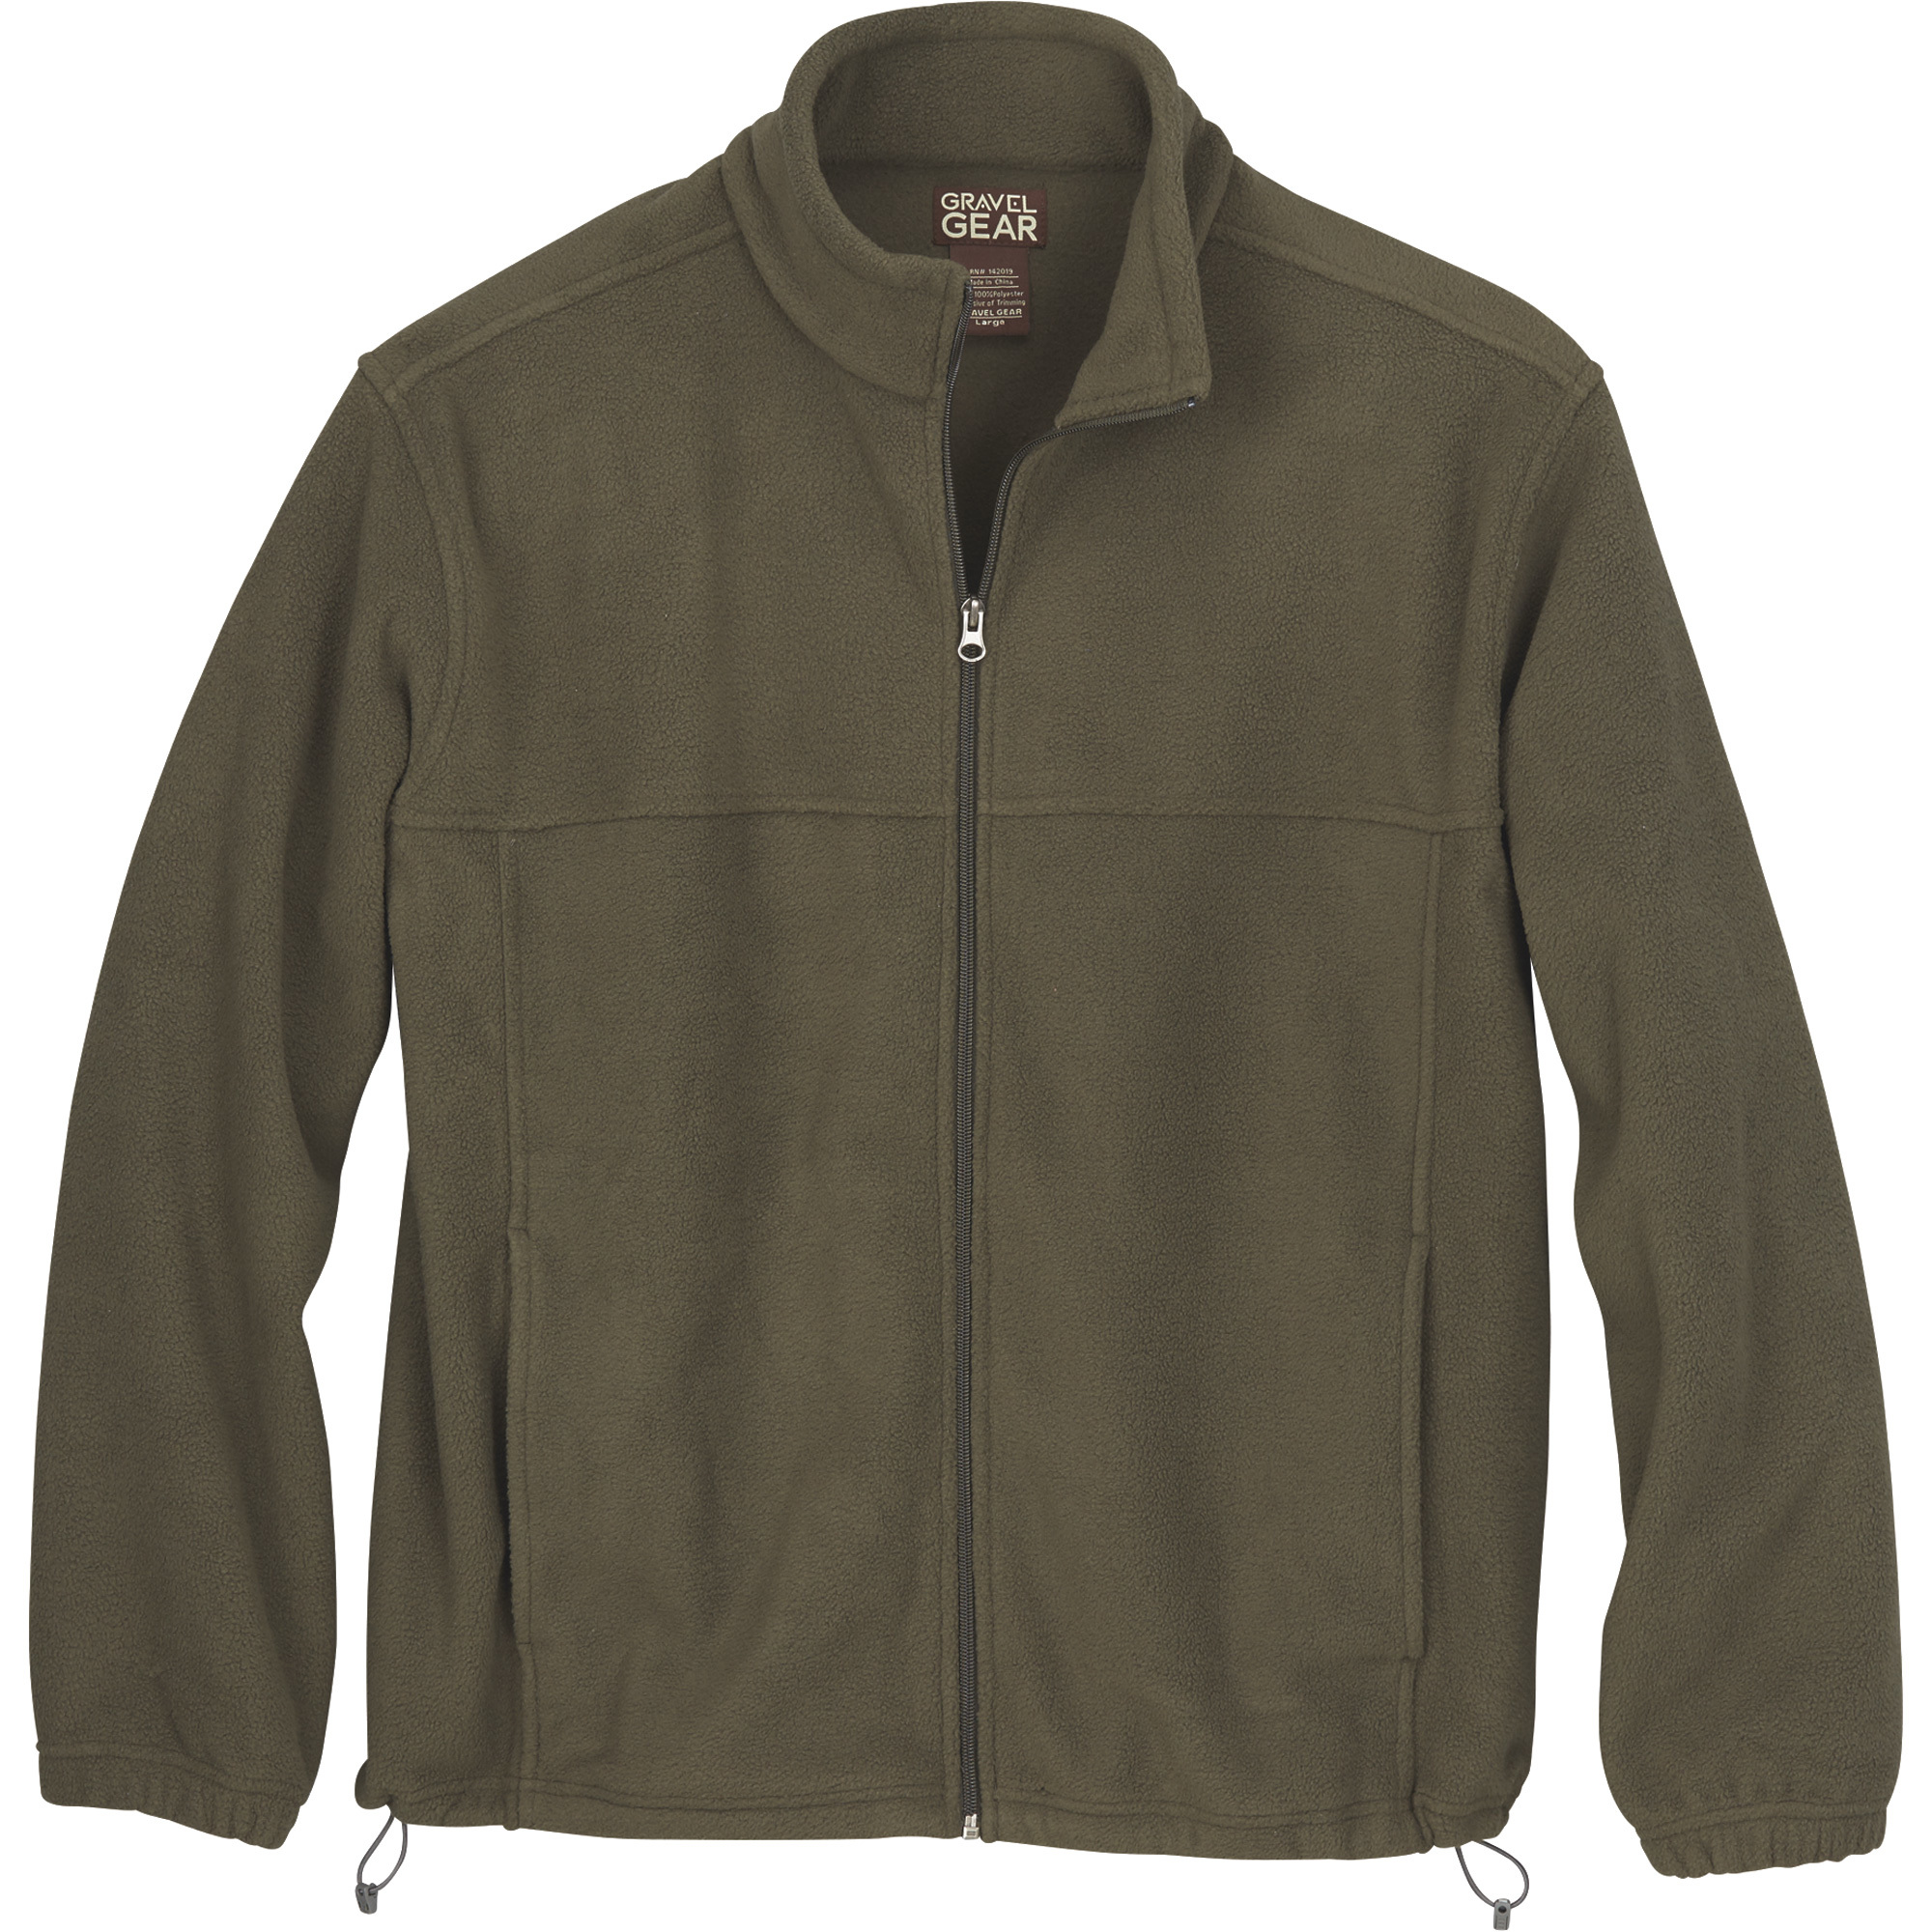 Gravel Gear Men's Zip-Up Fleece Jacket â Olive, Large